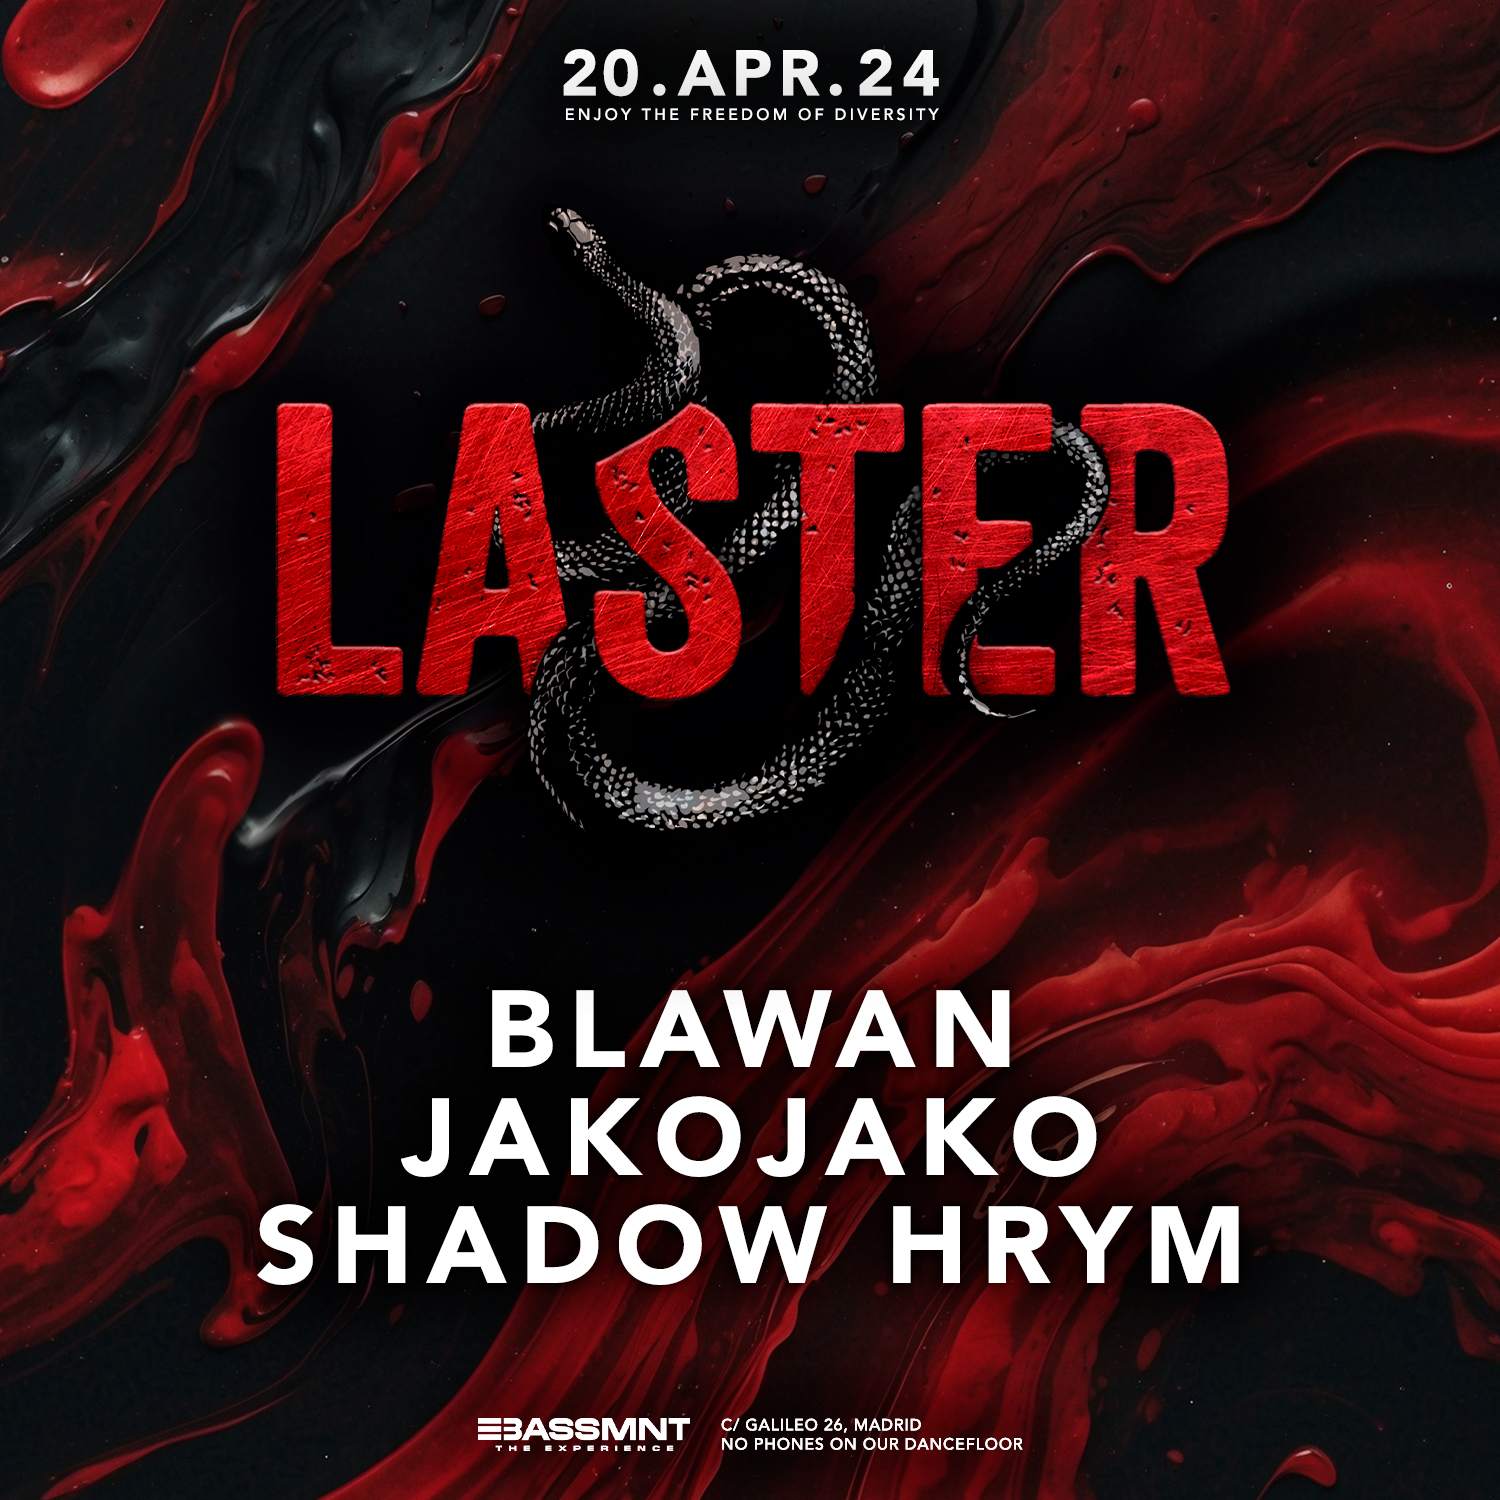 Laster Club vol. L - Blawan, JakoJako & SHADOW HRYM - Página trasera